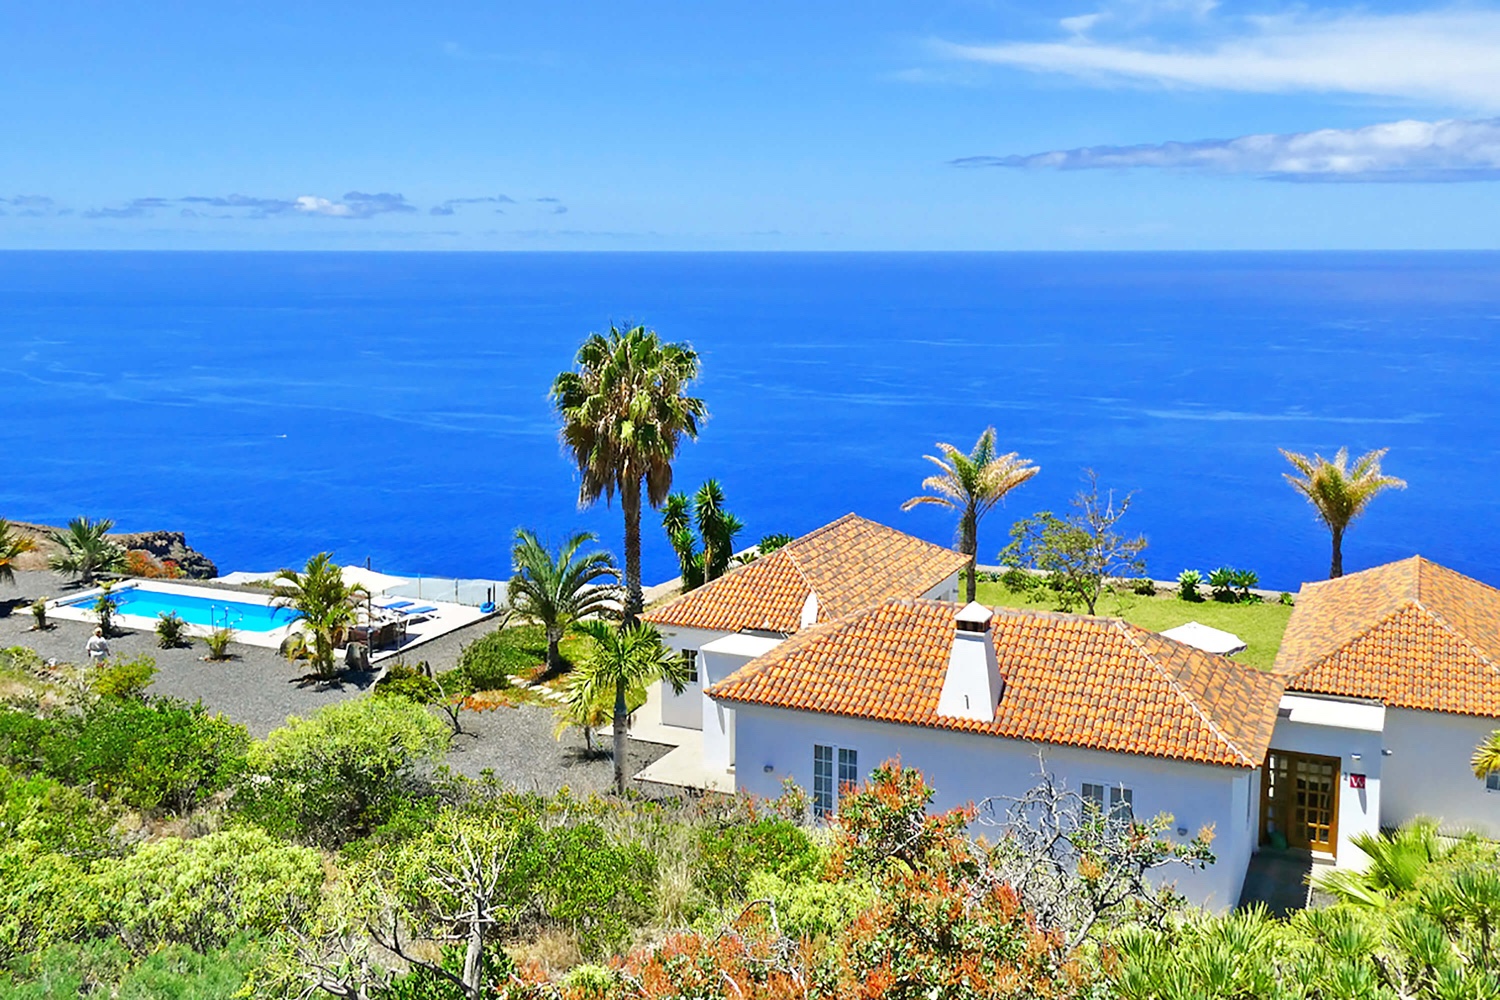 Velmi pěkný moderní dům s vlastním bazénem a úžasným panoramatickým výhledem na Atlantický oceán. Velmi dobře vybavený prázdninový dům je ideální pro dovolenou na La Palma se vším komfortem.